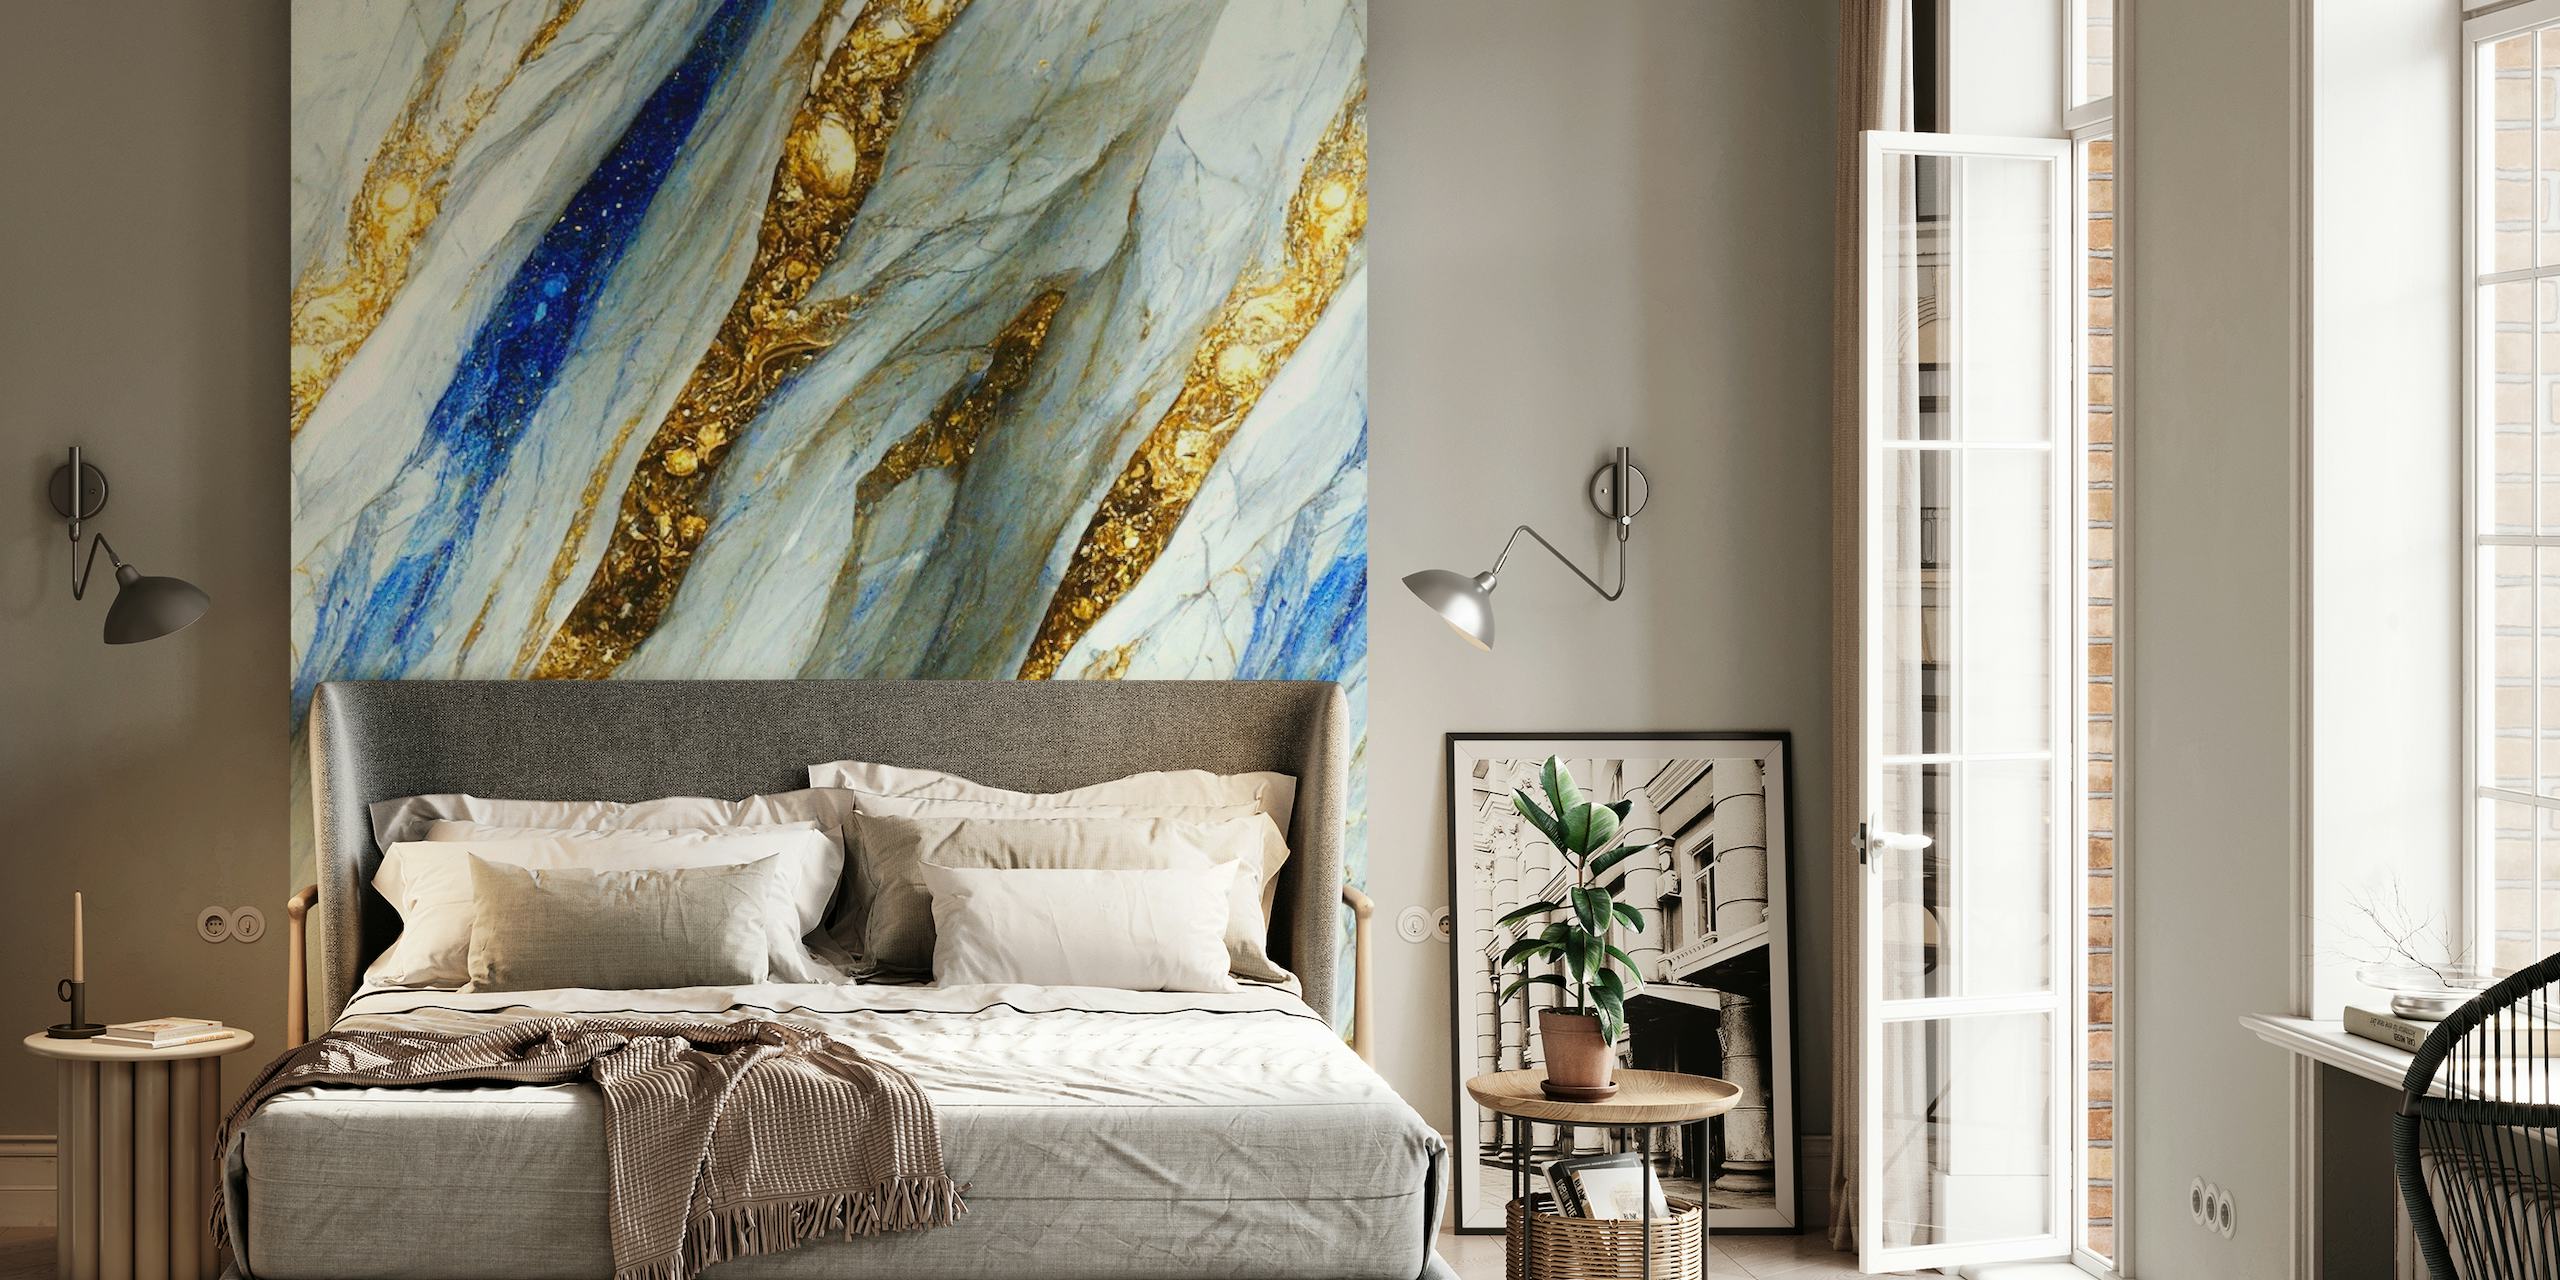 Mural de parede elegante com padrões de mármore dourado, azul e branco que lembram rios fluindo de ouro líquido e pedras preciosas.